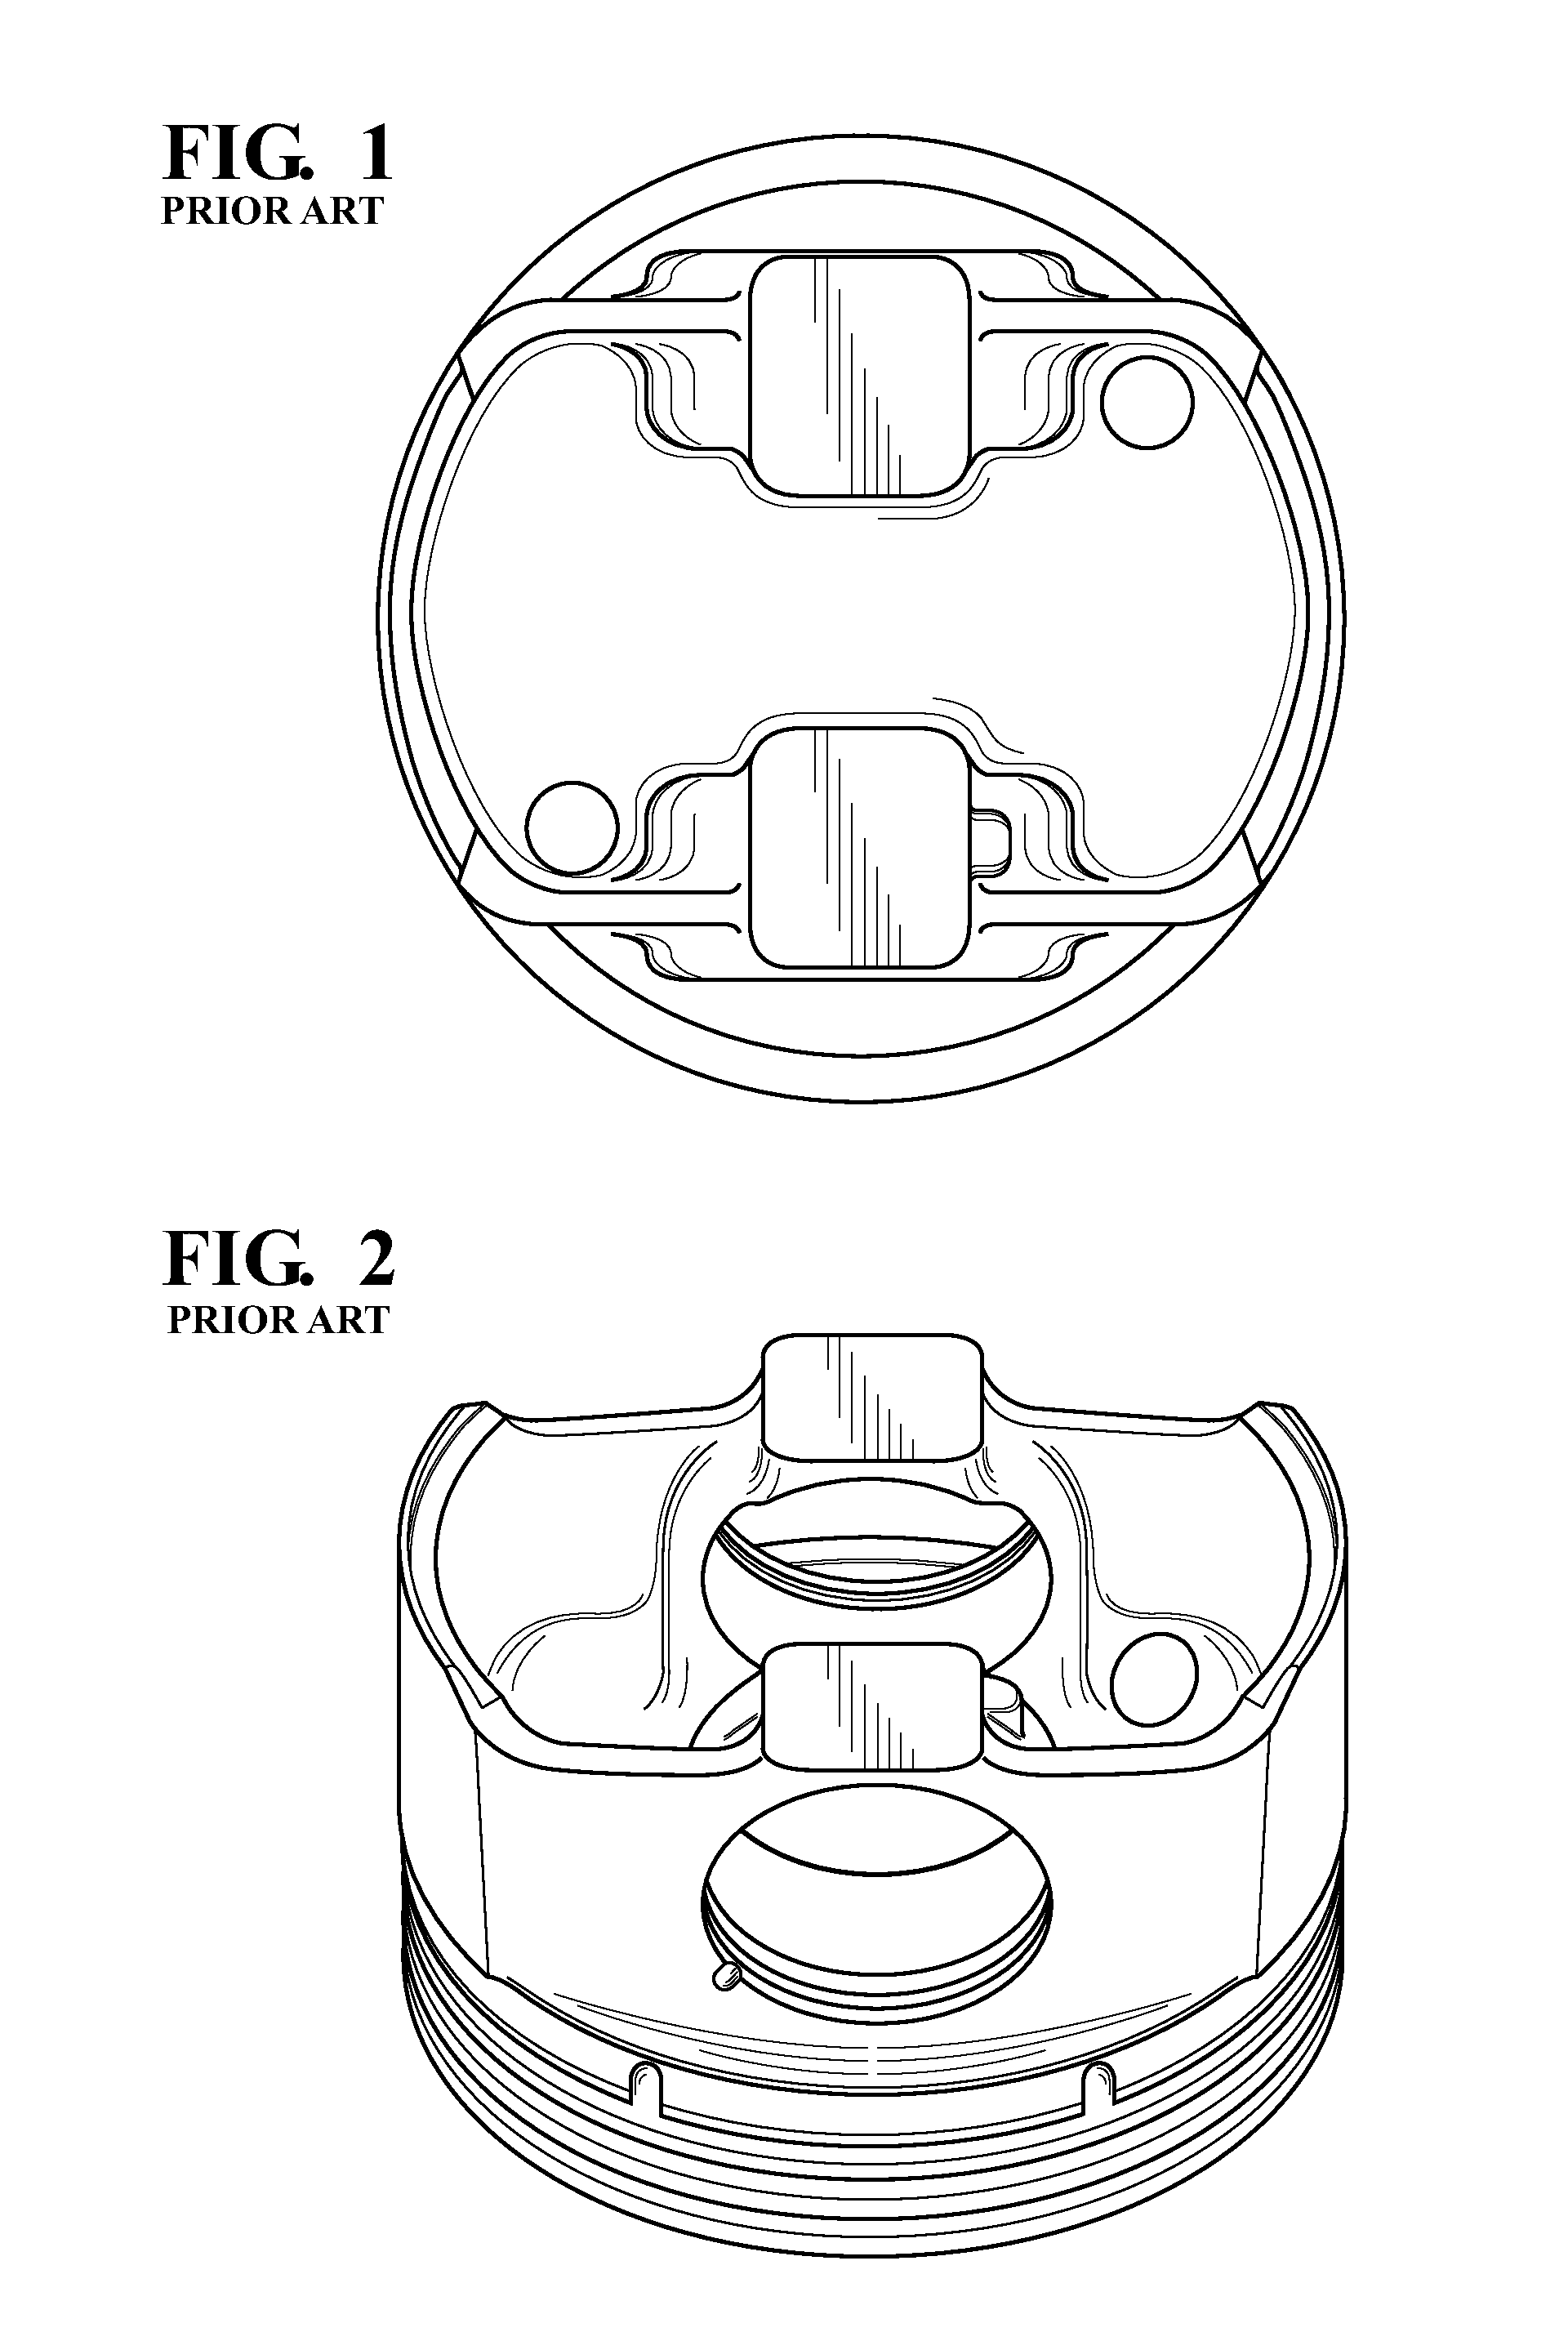 Steel piston with counter-bore design